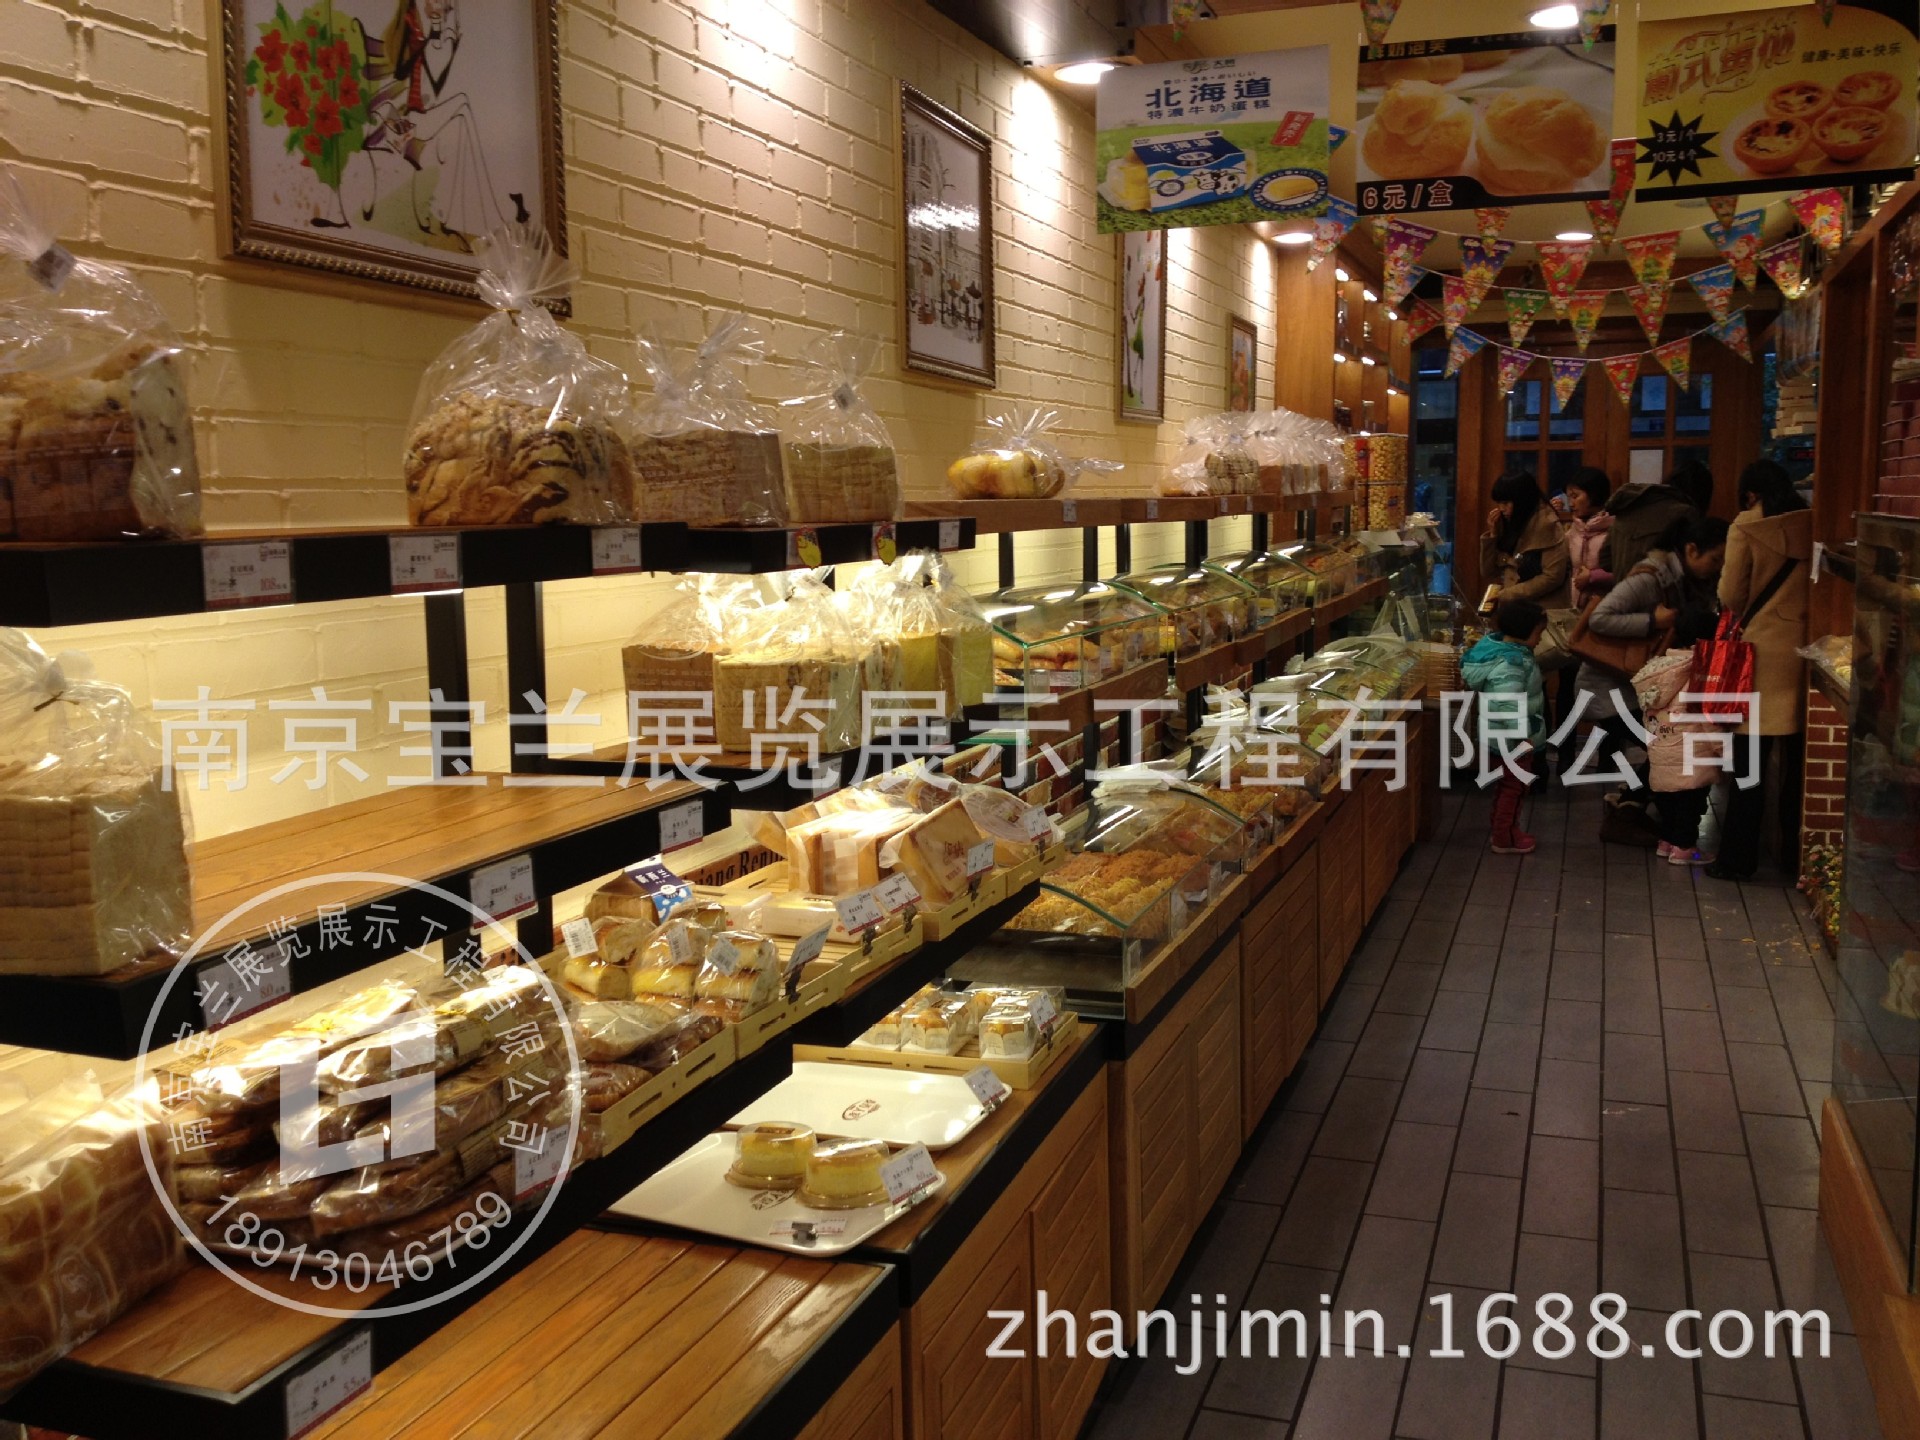 宝兰展柜 南京订做面包蛋糕柜 面包蛋糕展示柜 南京蛋糕房玻璃架